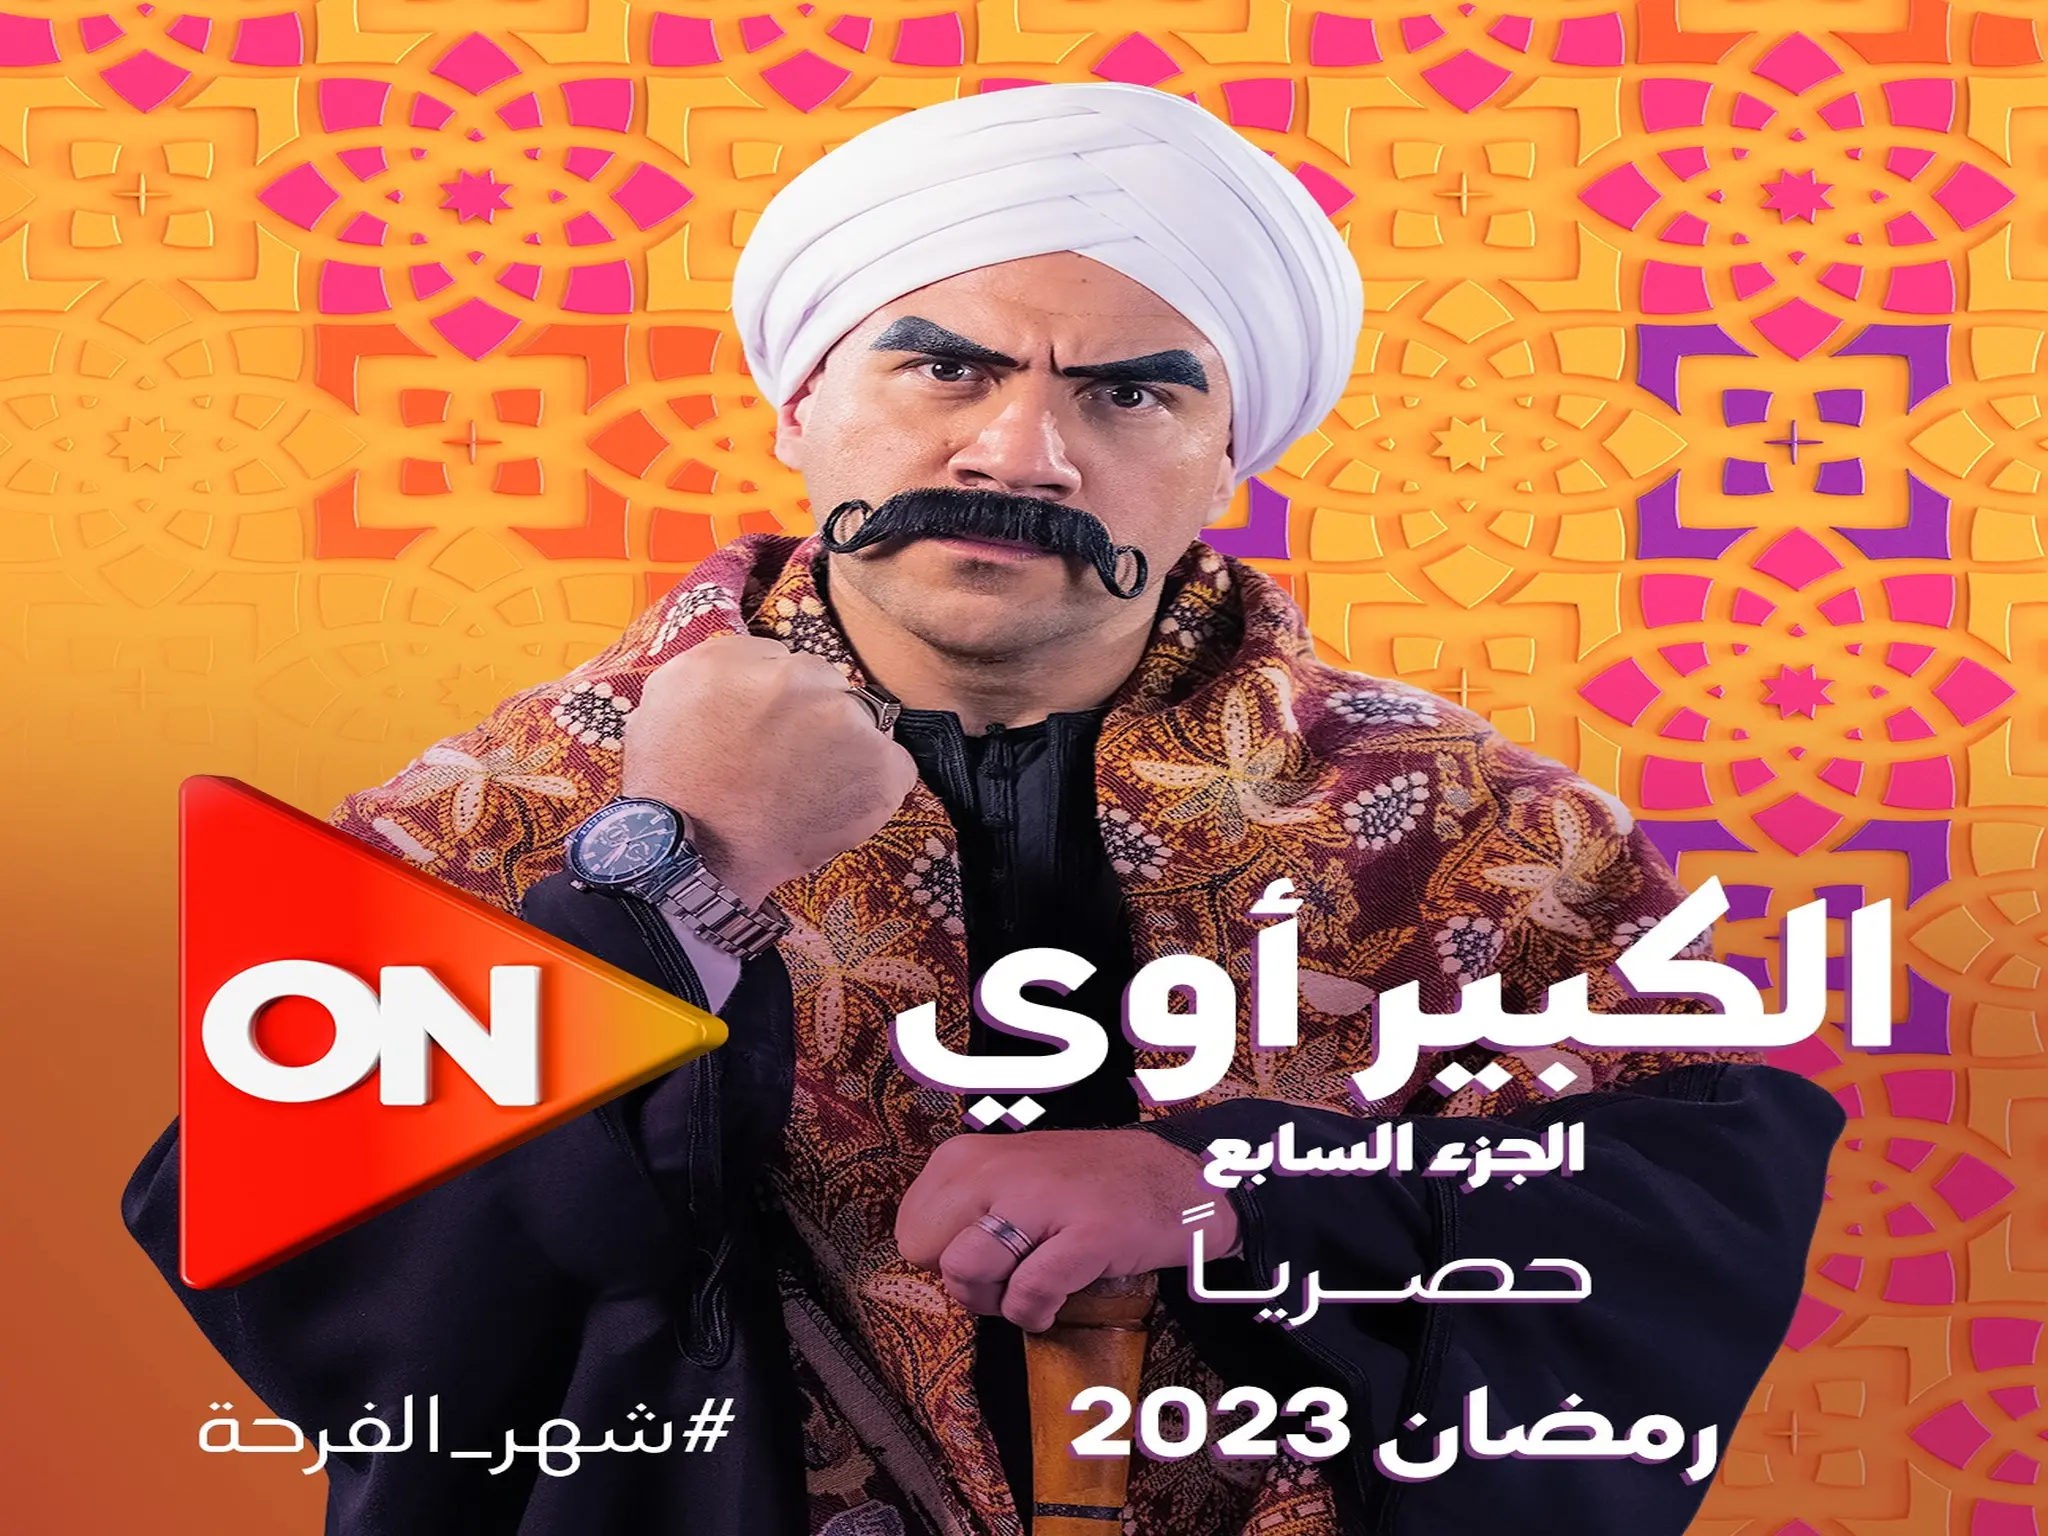 مسلسل "الكبير أوى 7" بطولة أحمد مكى على قناة ON فى رمضان 2023